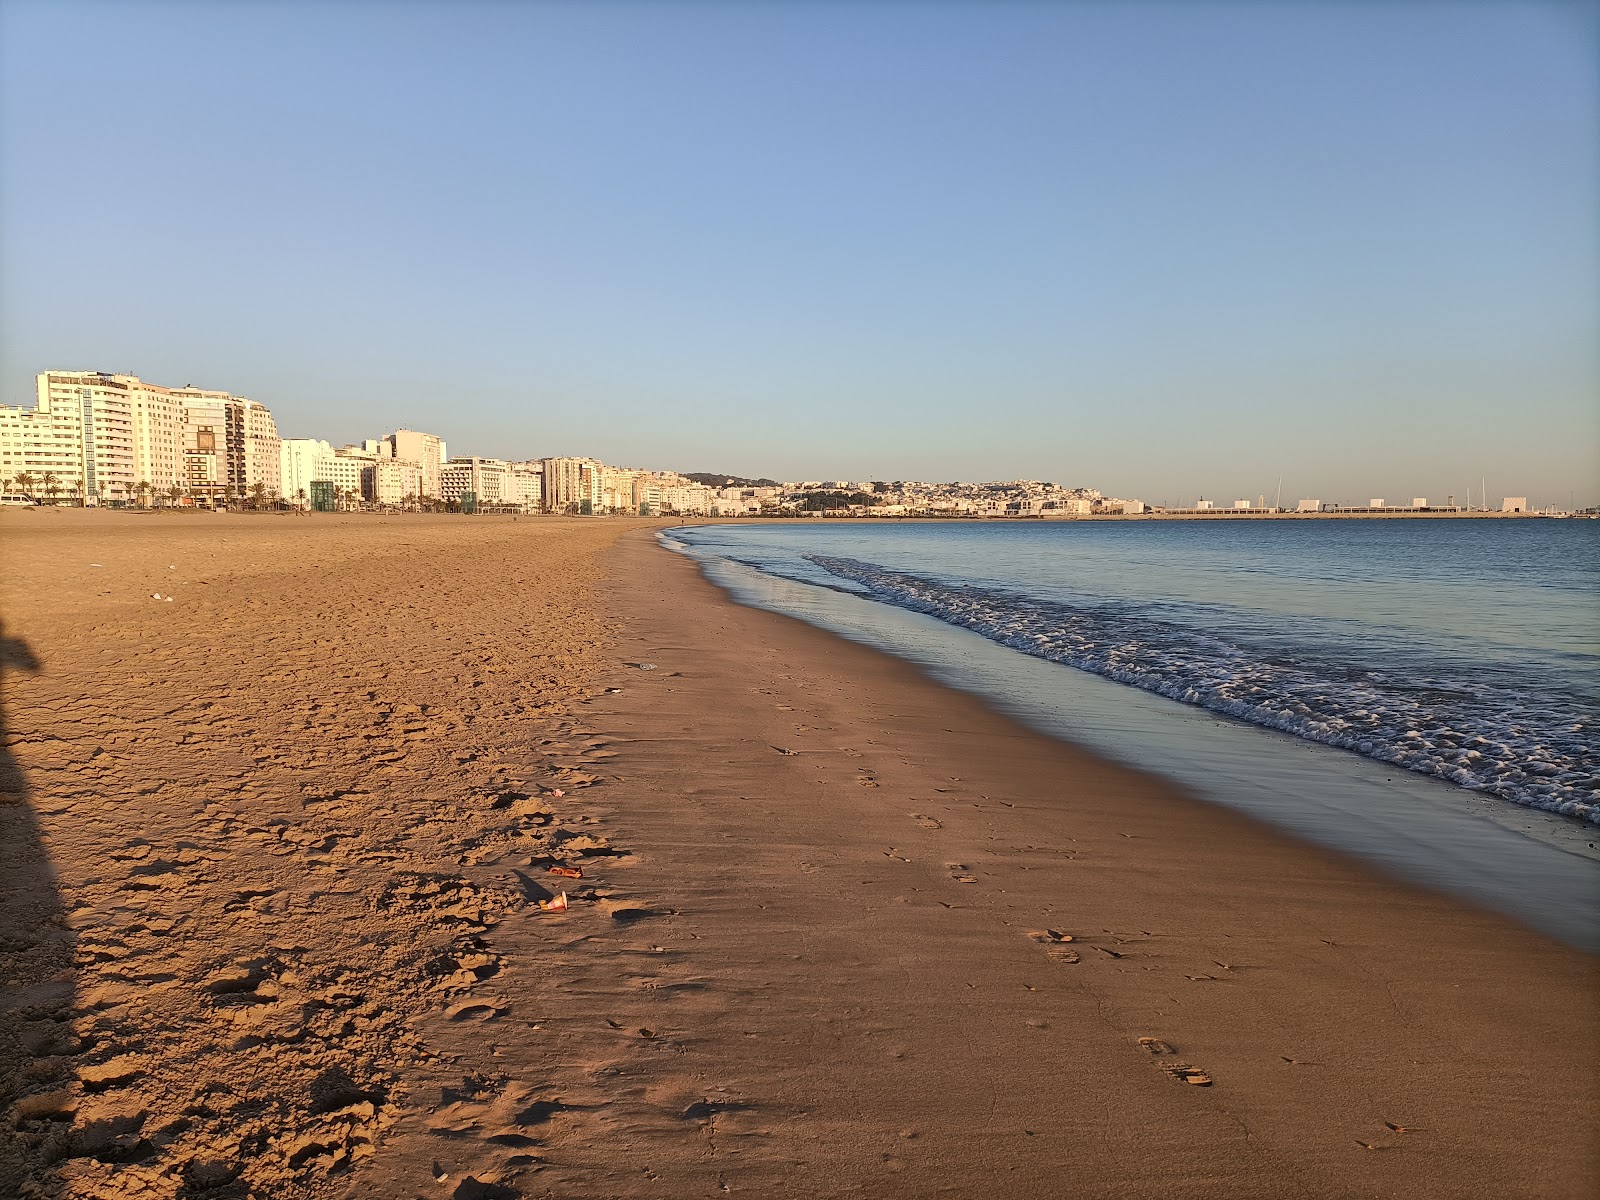 Fotografie cu Plaja Malabata (Tanger) - locul popular printre cunoscătorii de relaxare